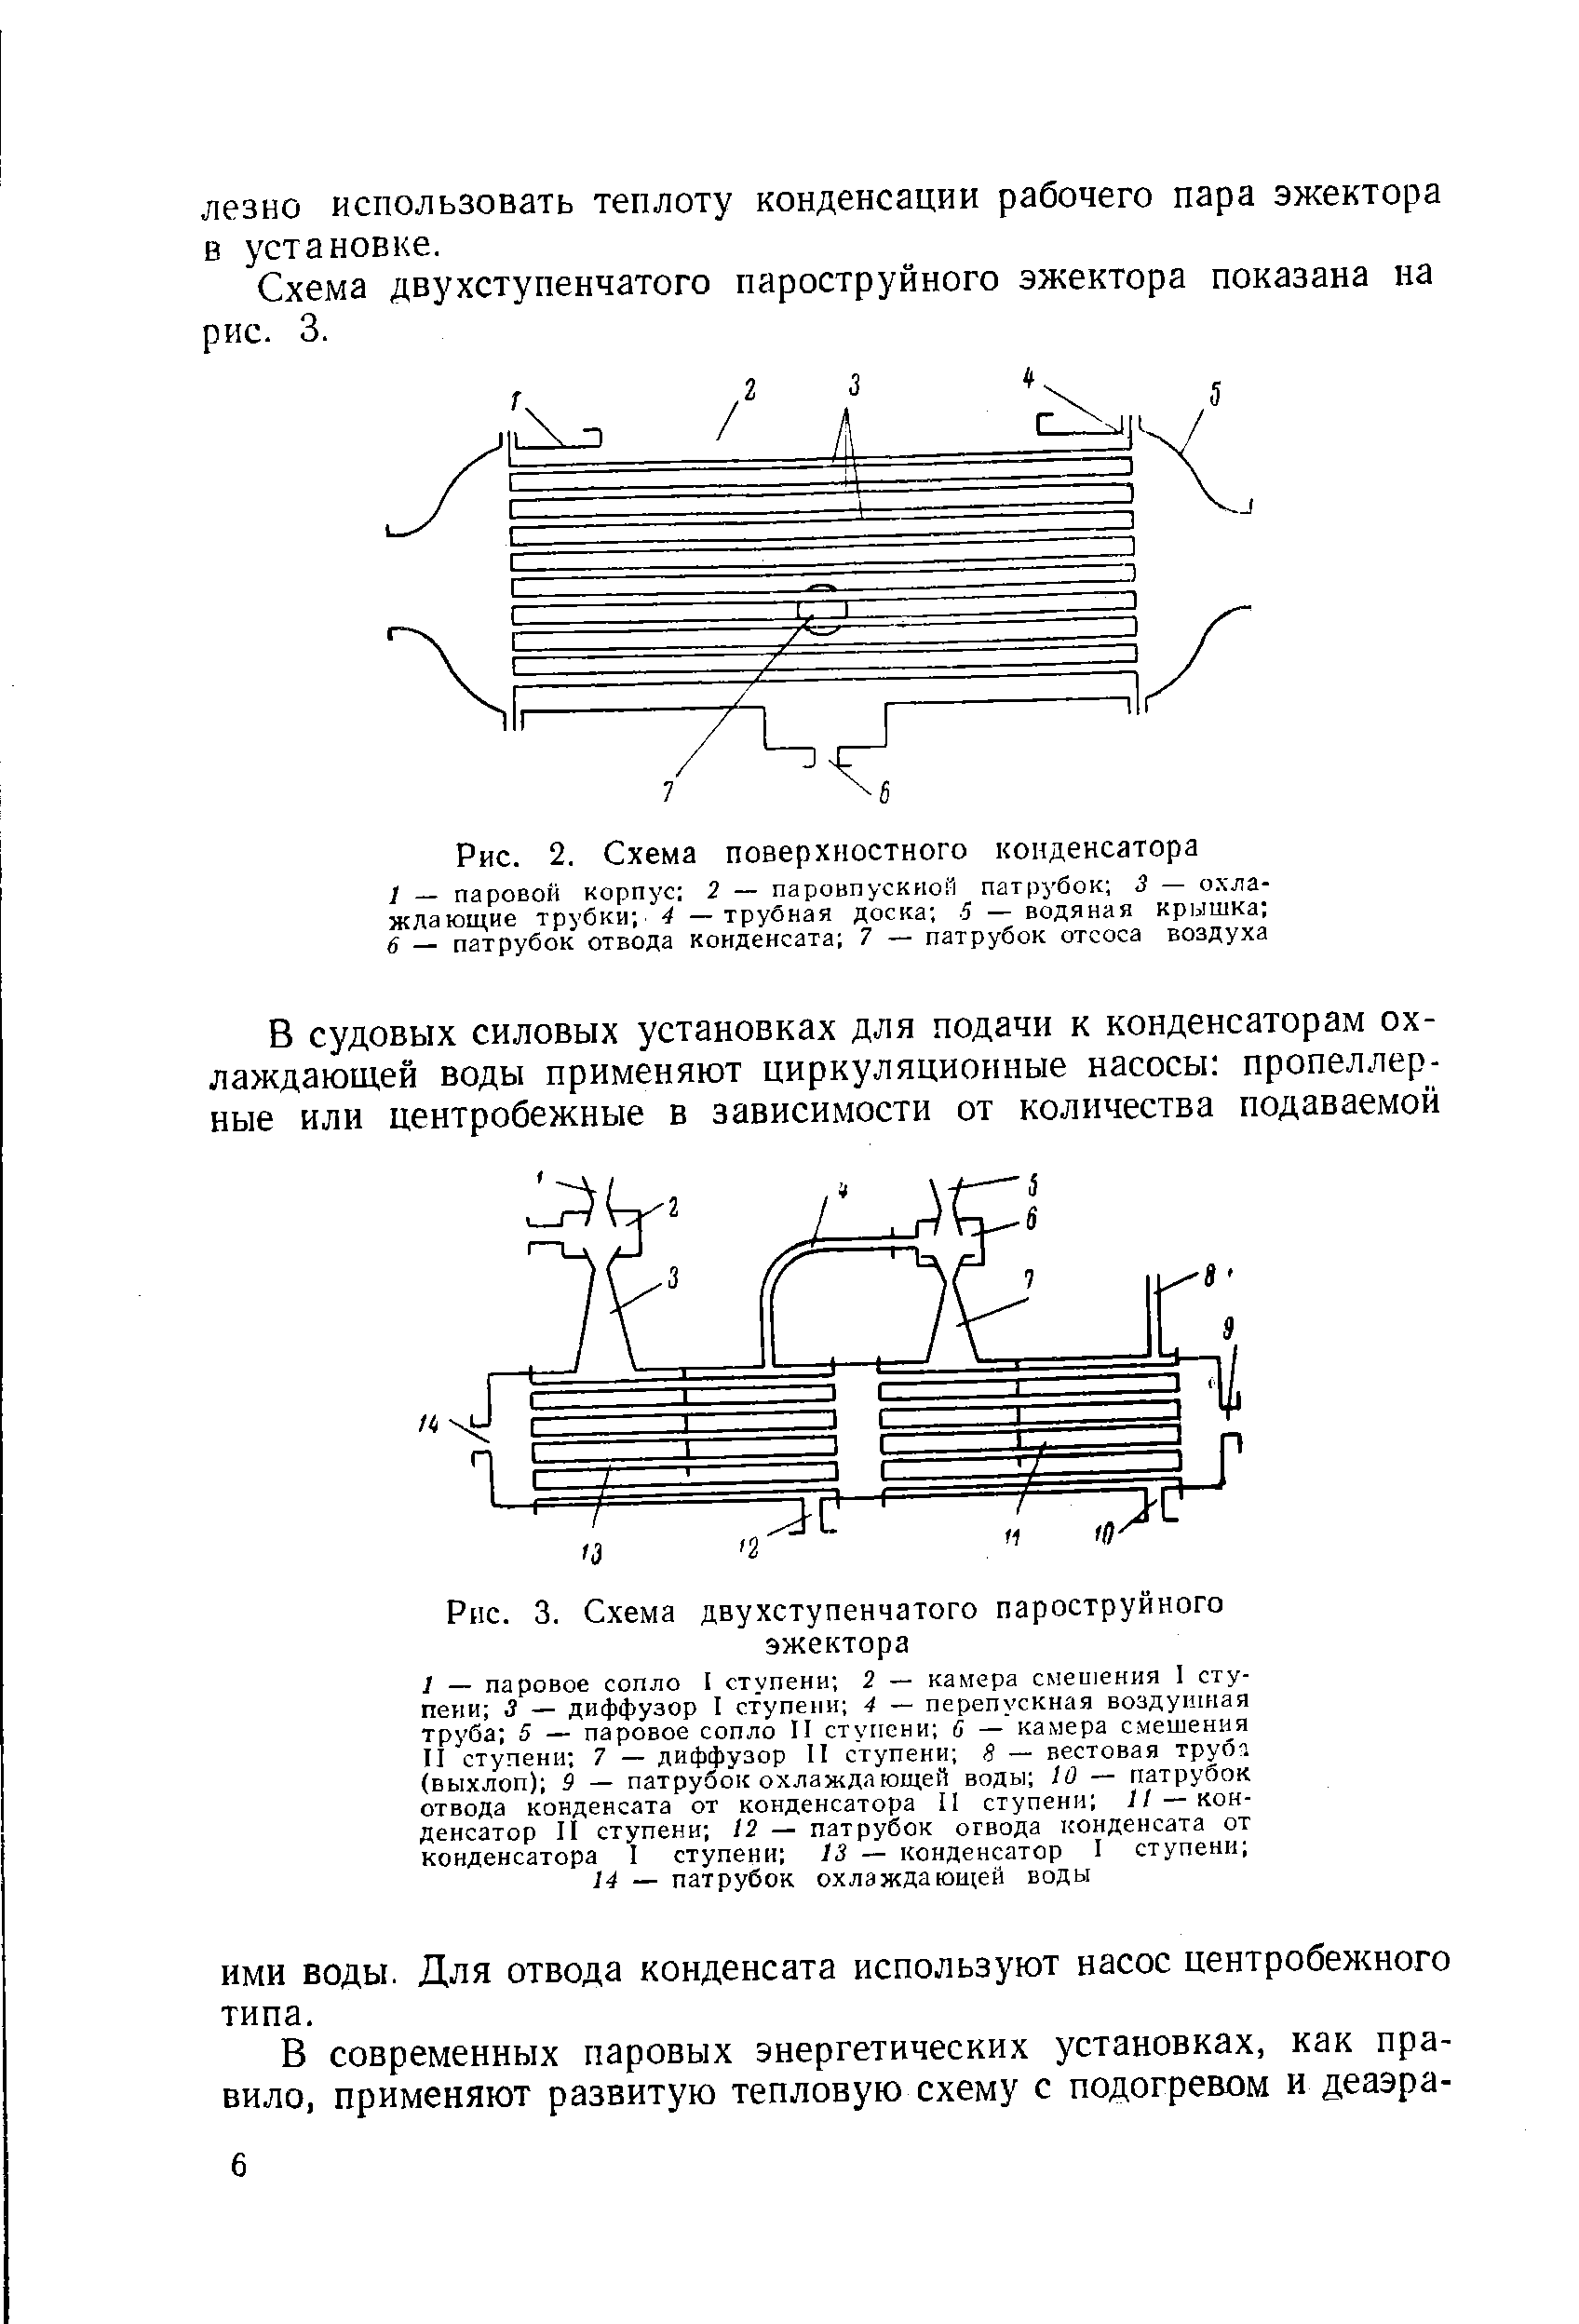 Рис. 2. Схема поверхностного конденсатора
